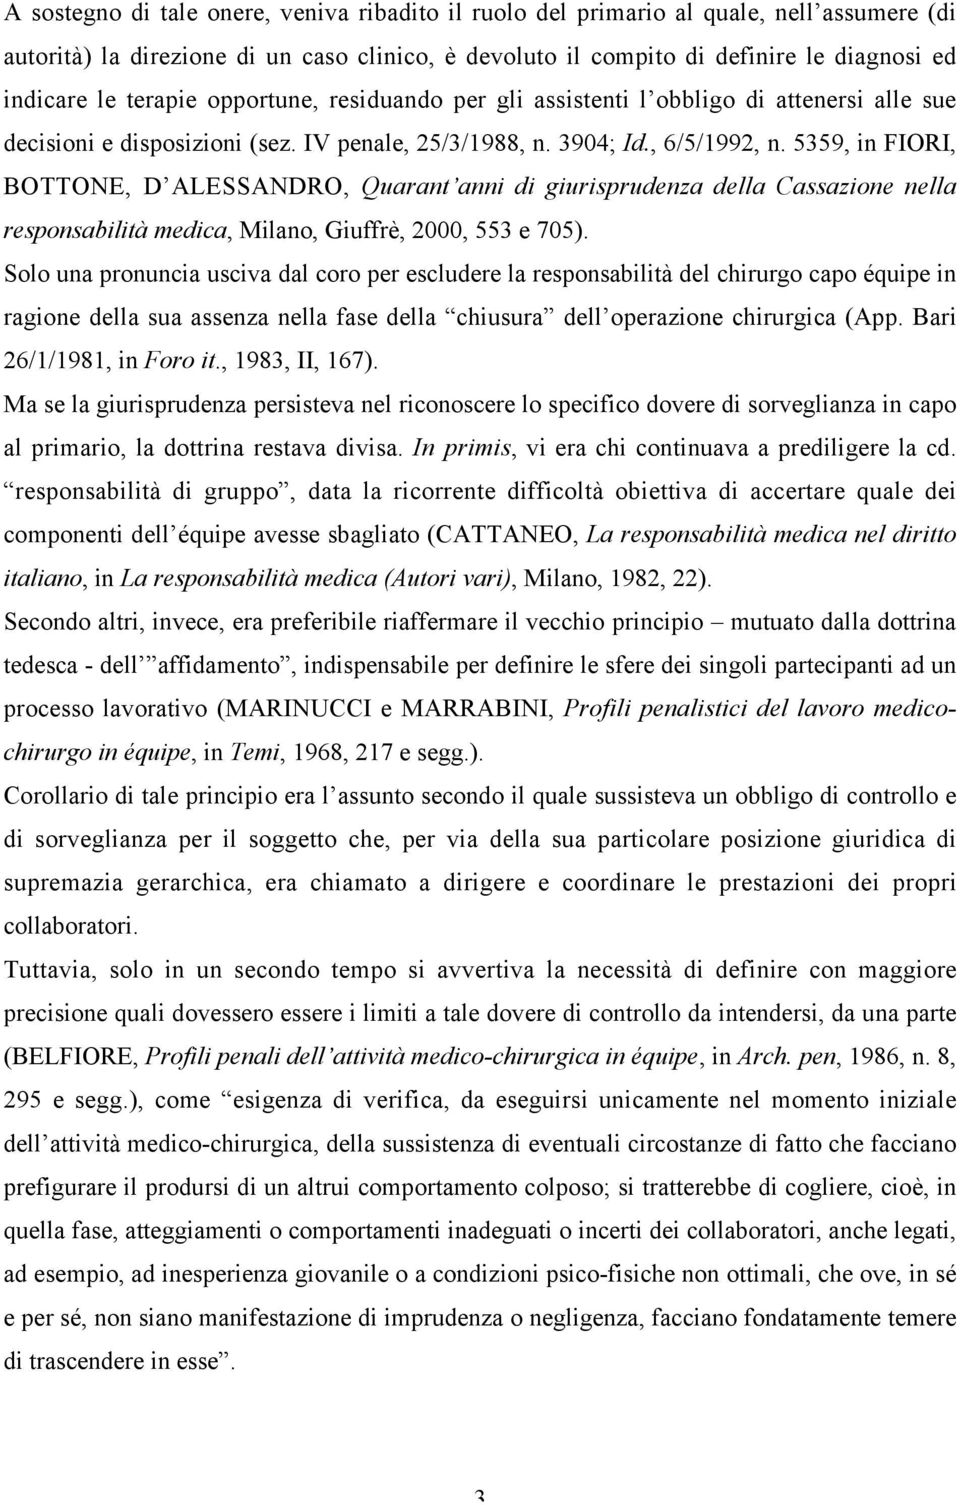 5359, in FIORI, BOTTONE, D ALESSANDRO, Quarant anni di giurisprudenza della Cassazione nella responsabilità medica, Milano, Giuffrè, 2000, 553 e 705).